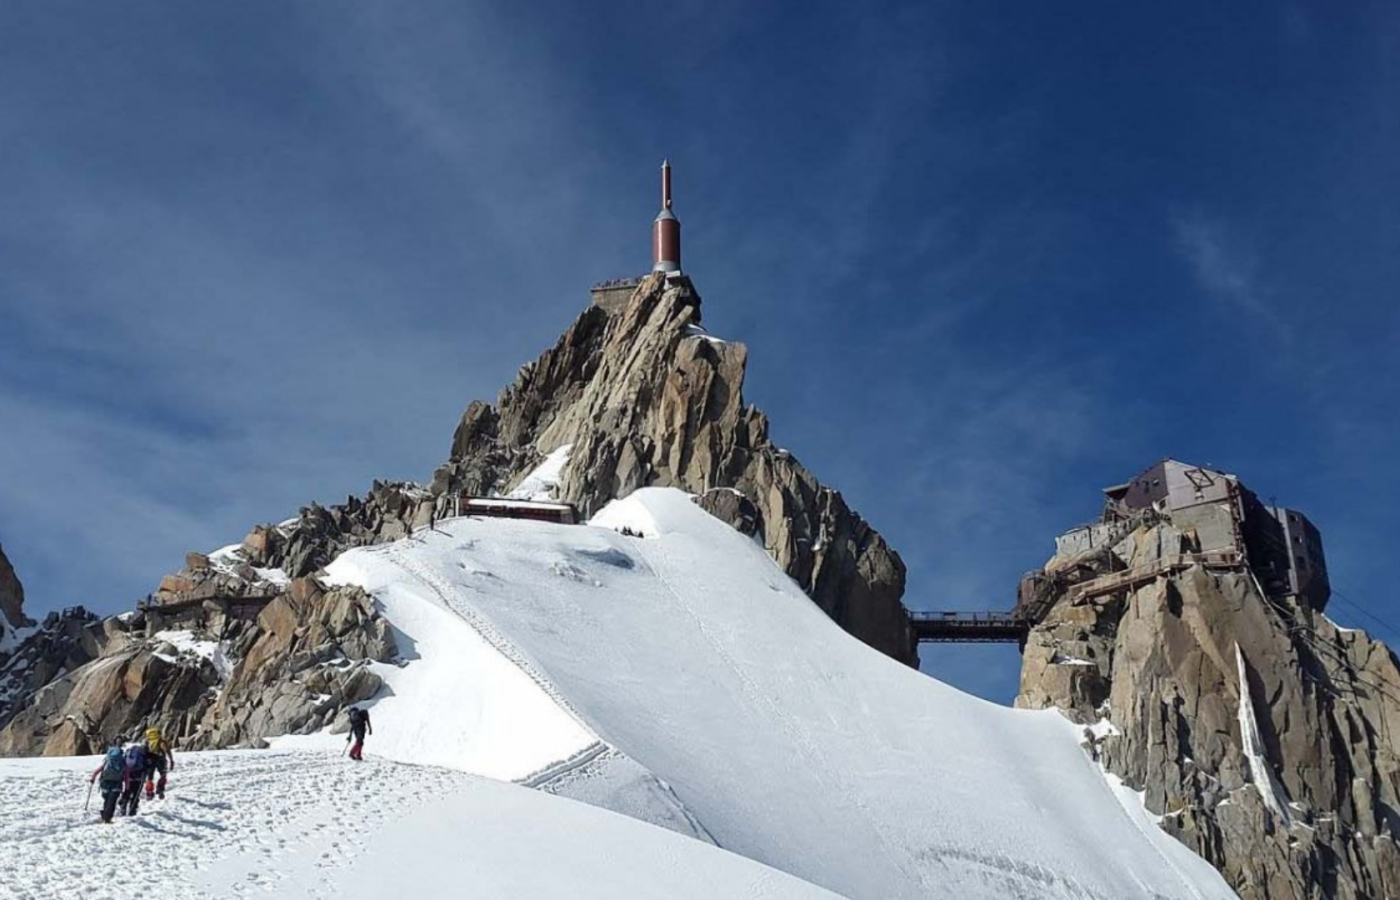 L’Aiguille du Midi est un incontournable de la Vallée de Chamonix-Mont-Blanc. Depuis le centre de Chamonix, le téléphérique de l’Aiguille du Midi vous transporte en 20 minutes aux portes de la Haute Montagne à 3842 m.